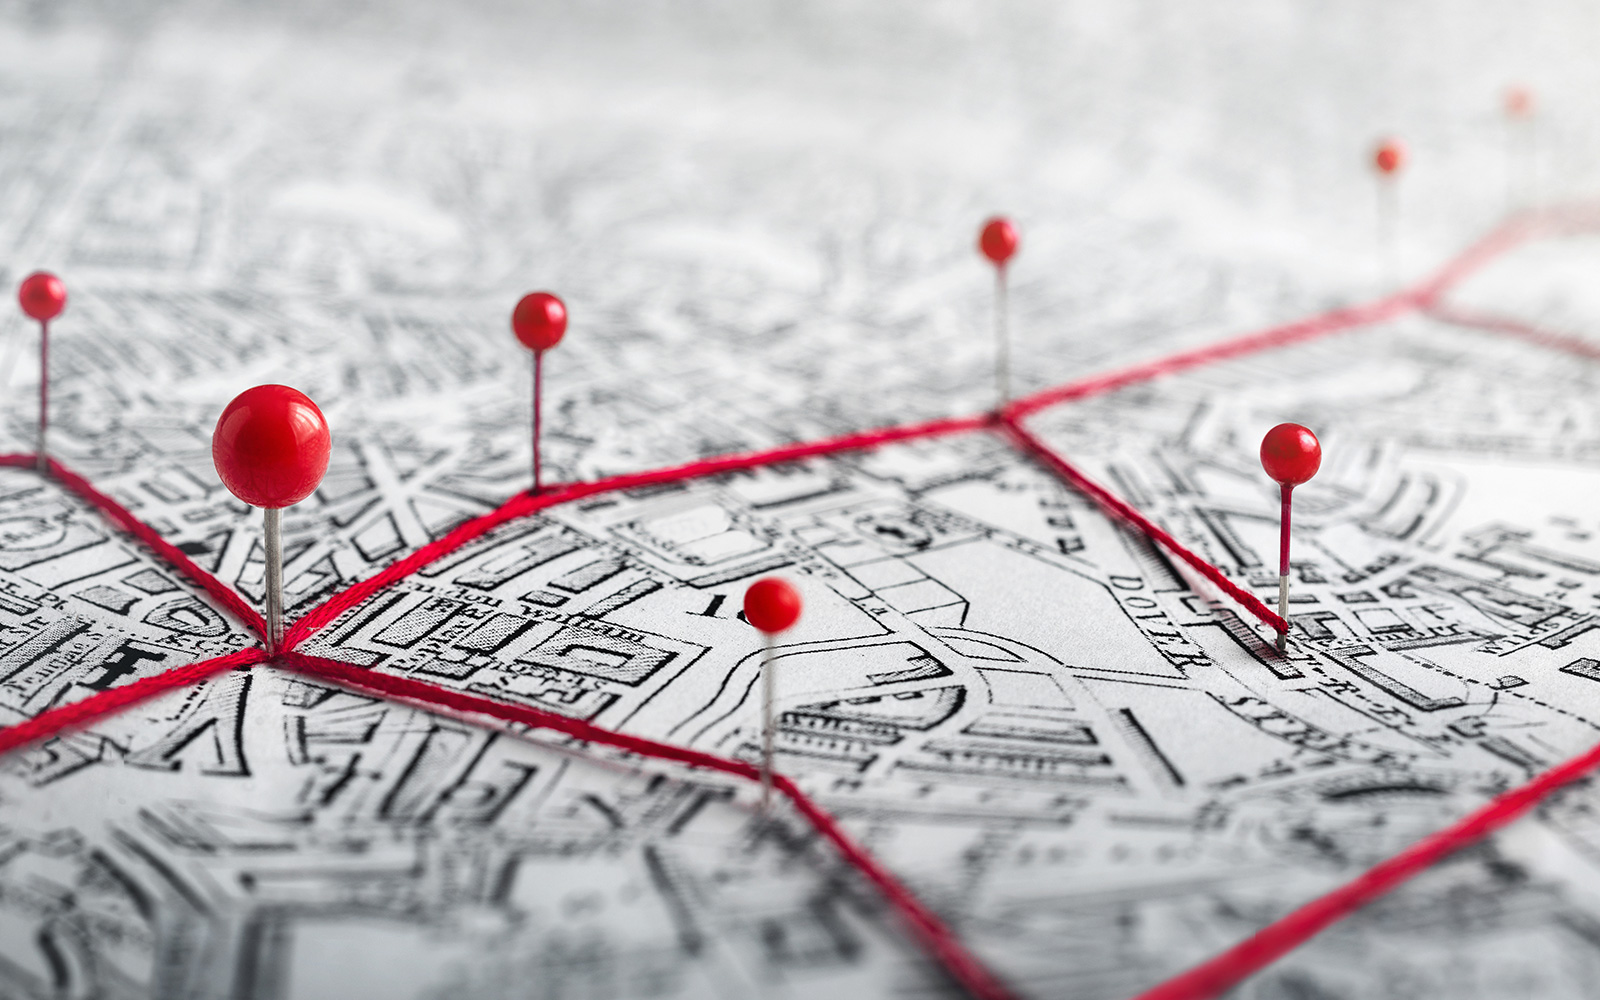 Stadtplan mit roten Stecknadeln und roten Fäden